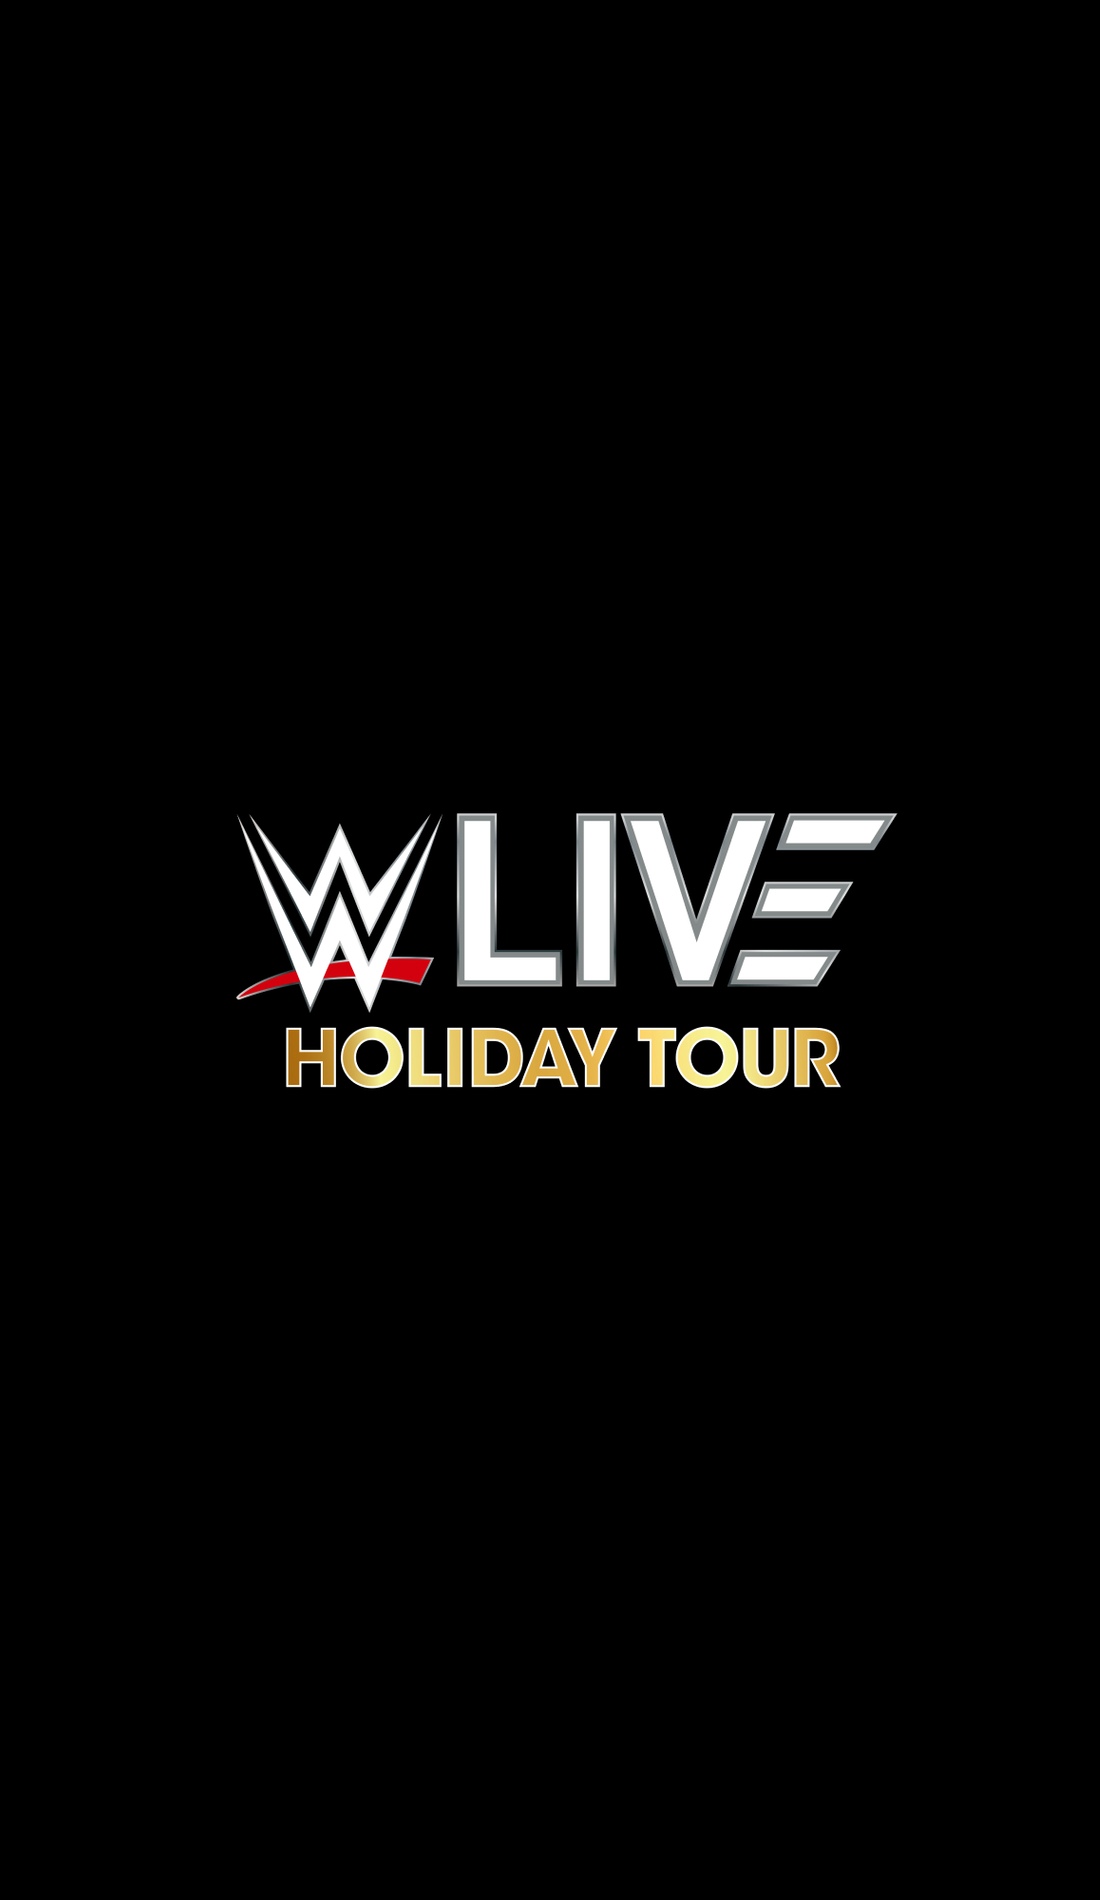 A WWE Live live event